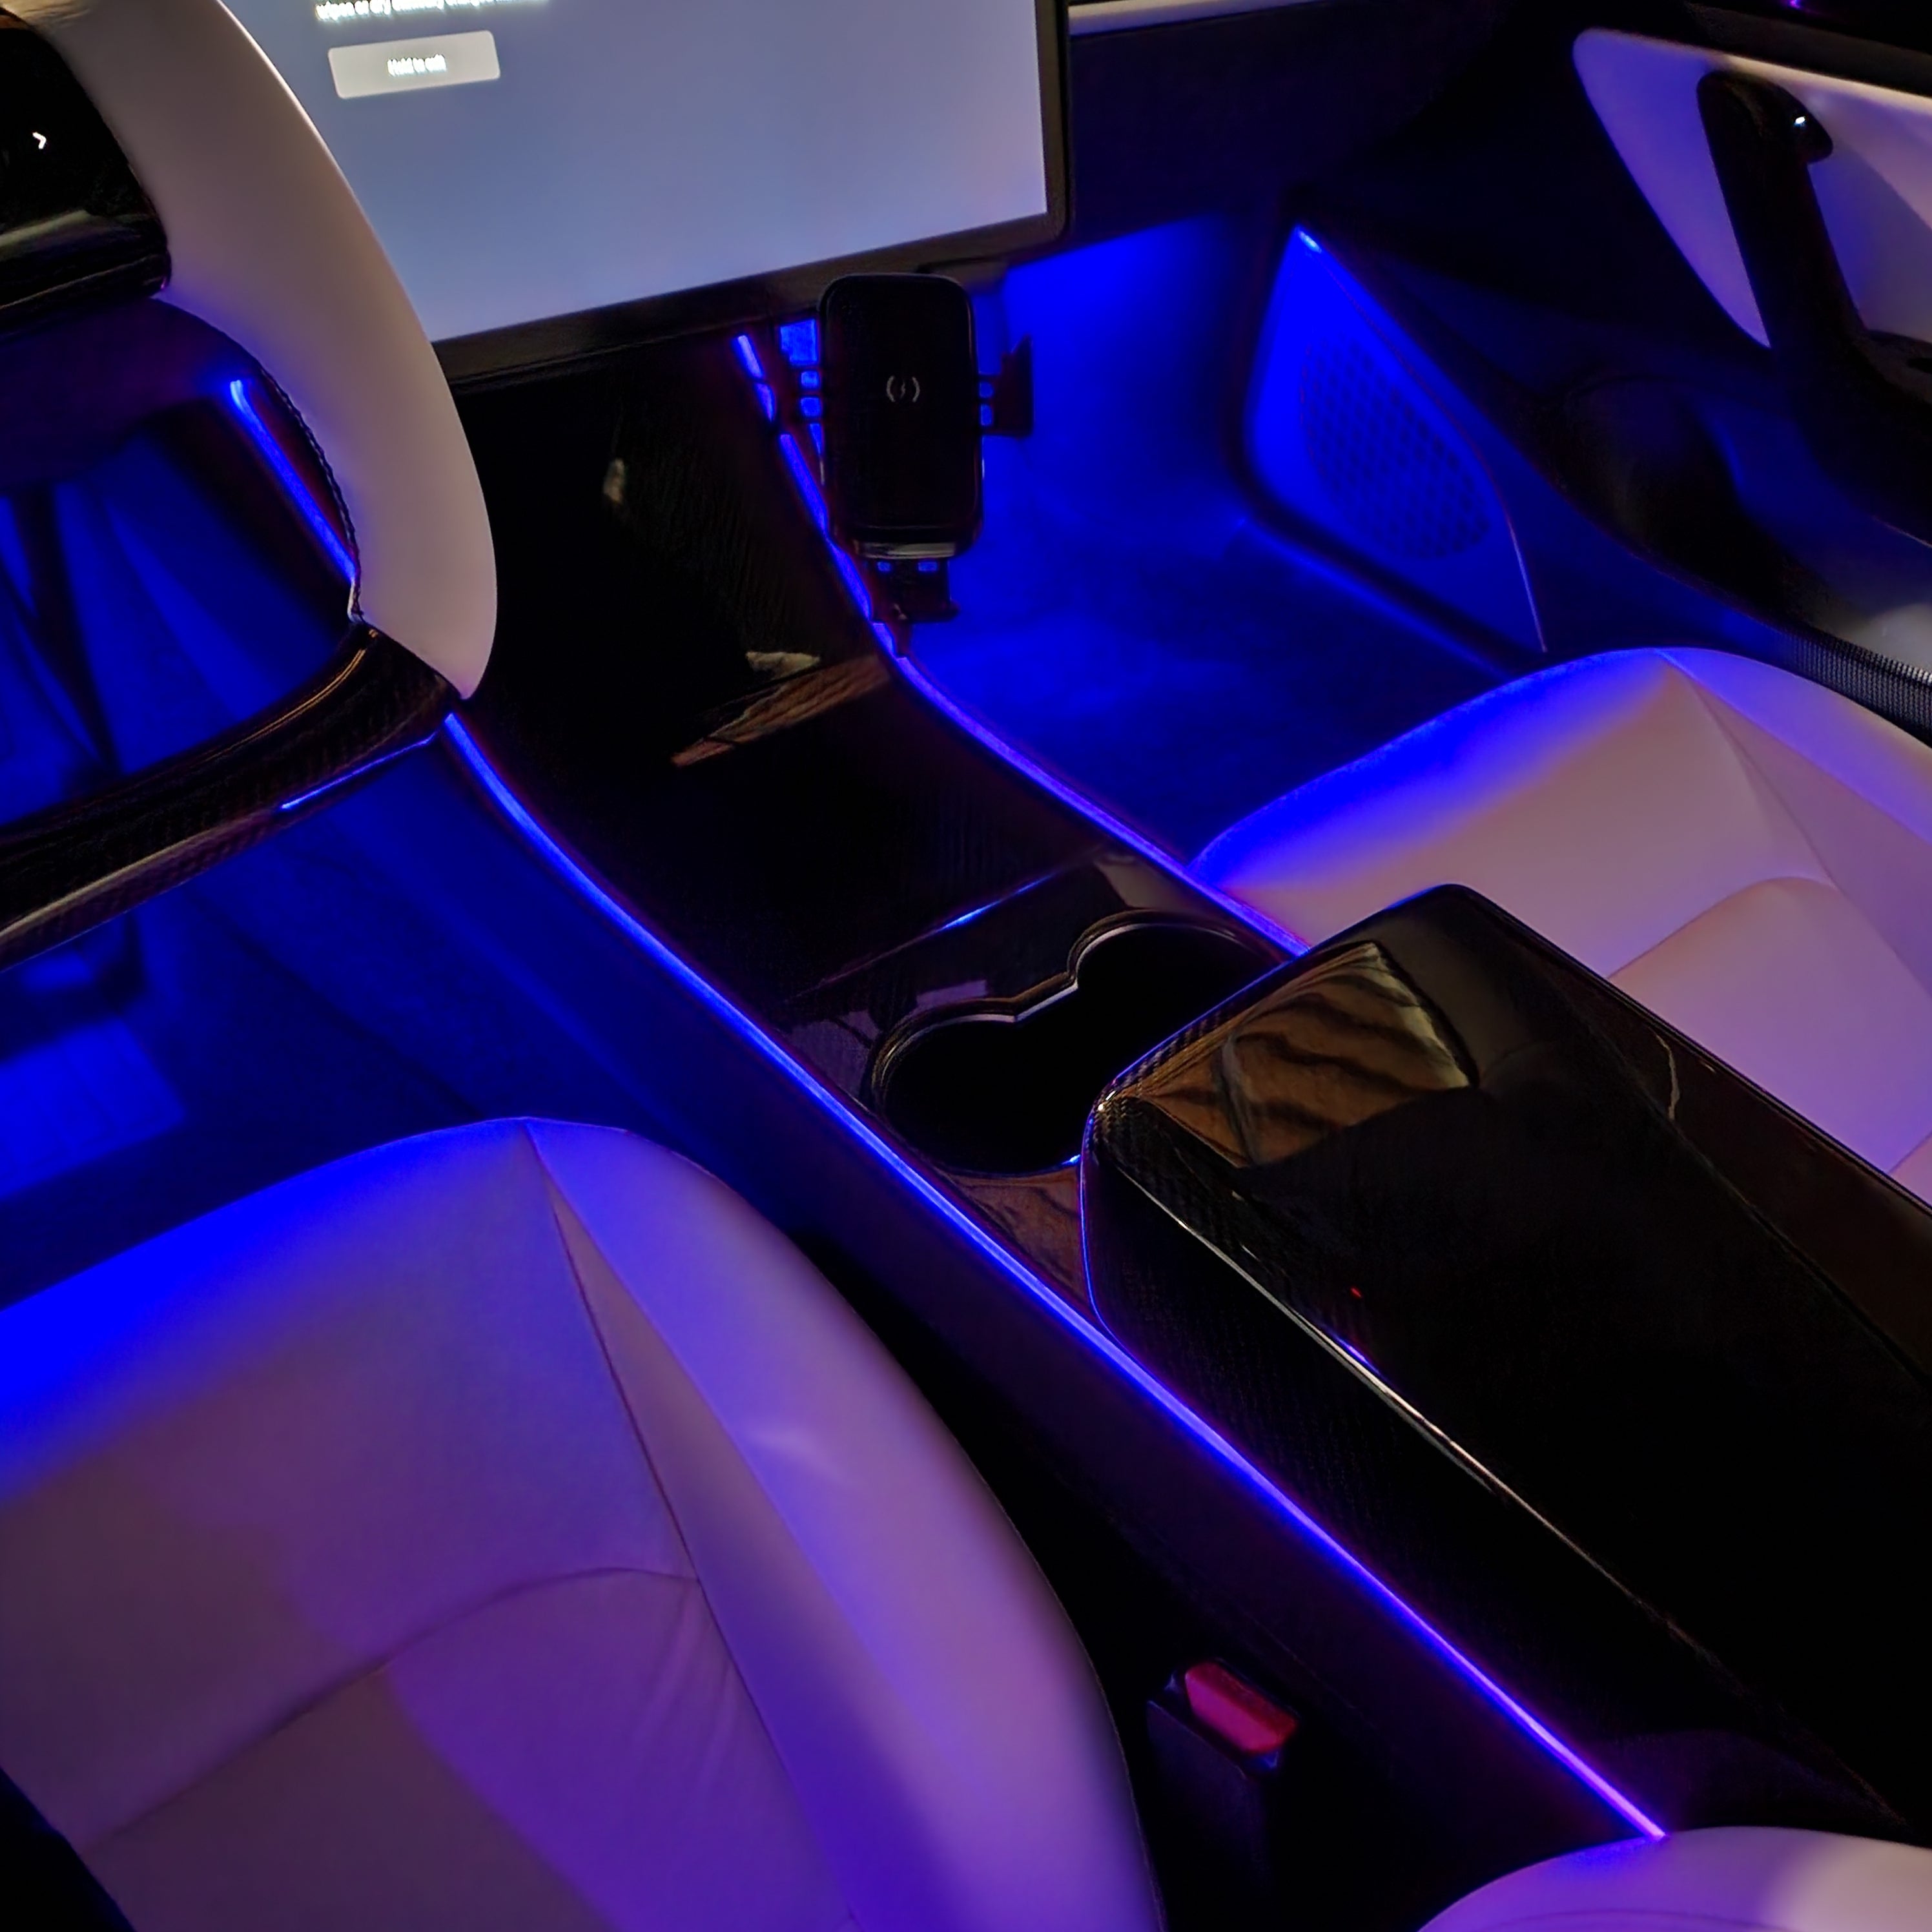 Kit de iluminación ambiental para consola central para automóvil para Tesla  Model 3 & Y 2021-2022